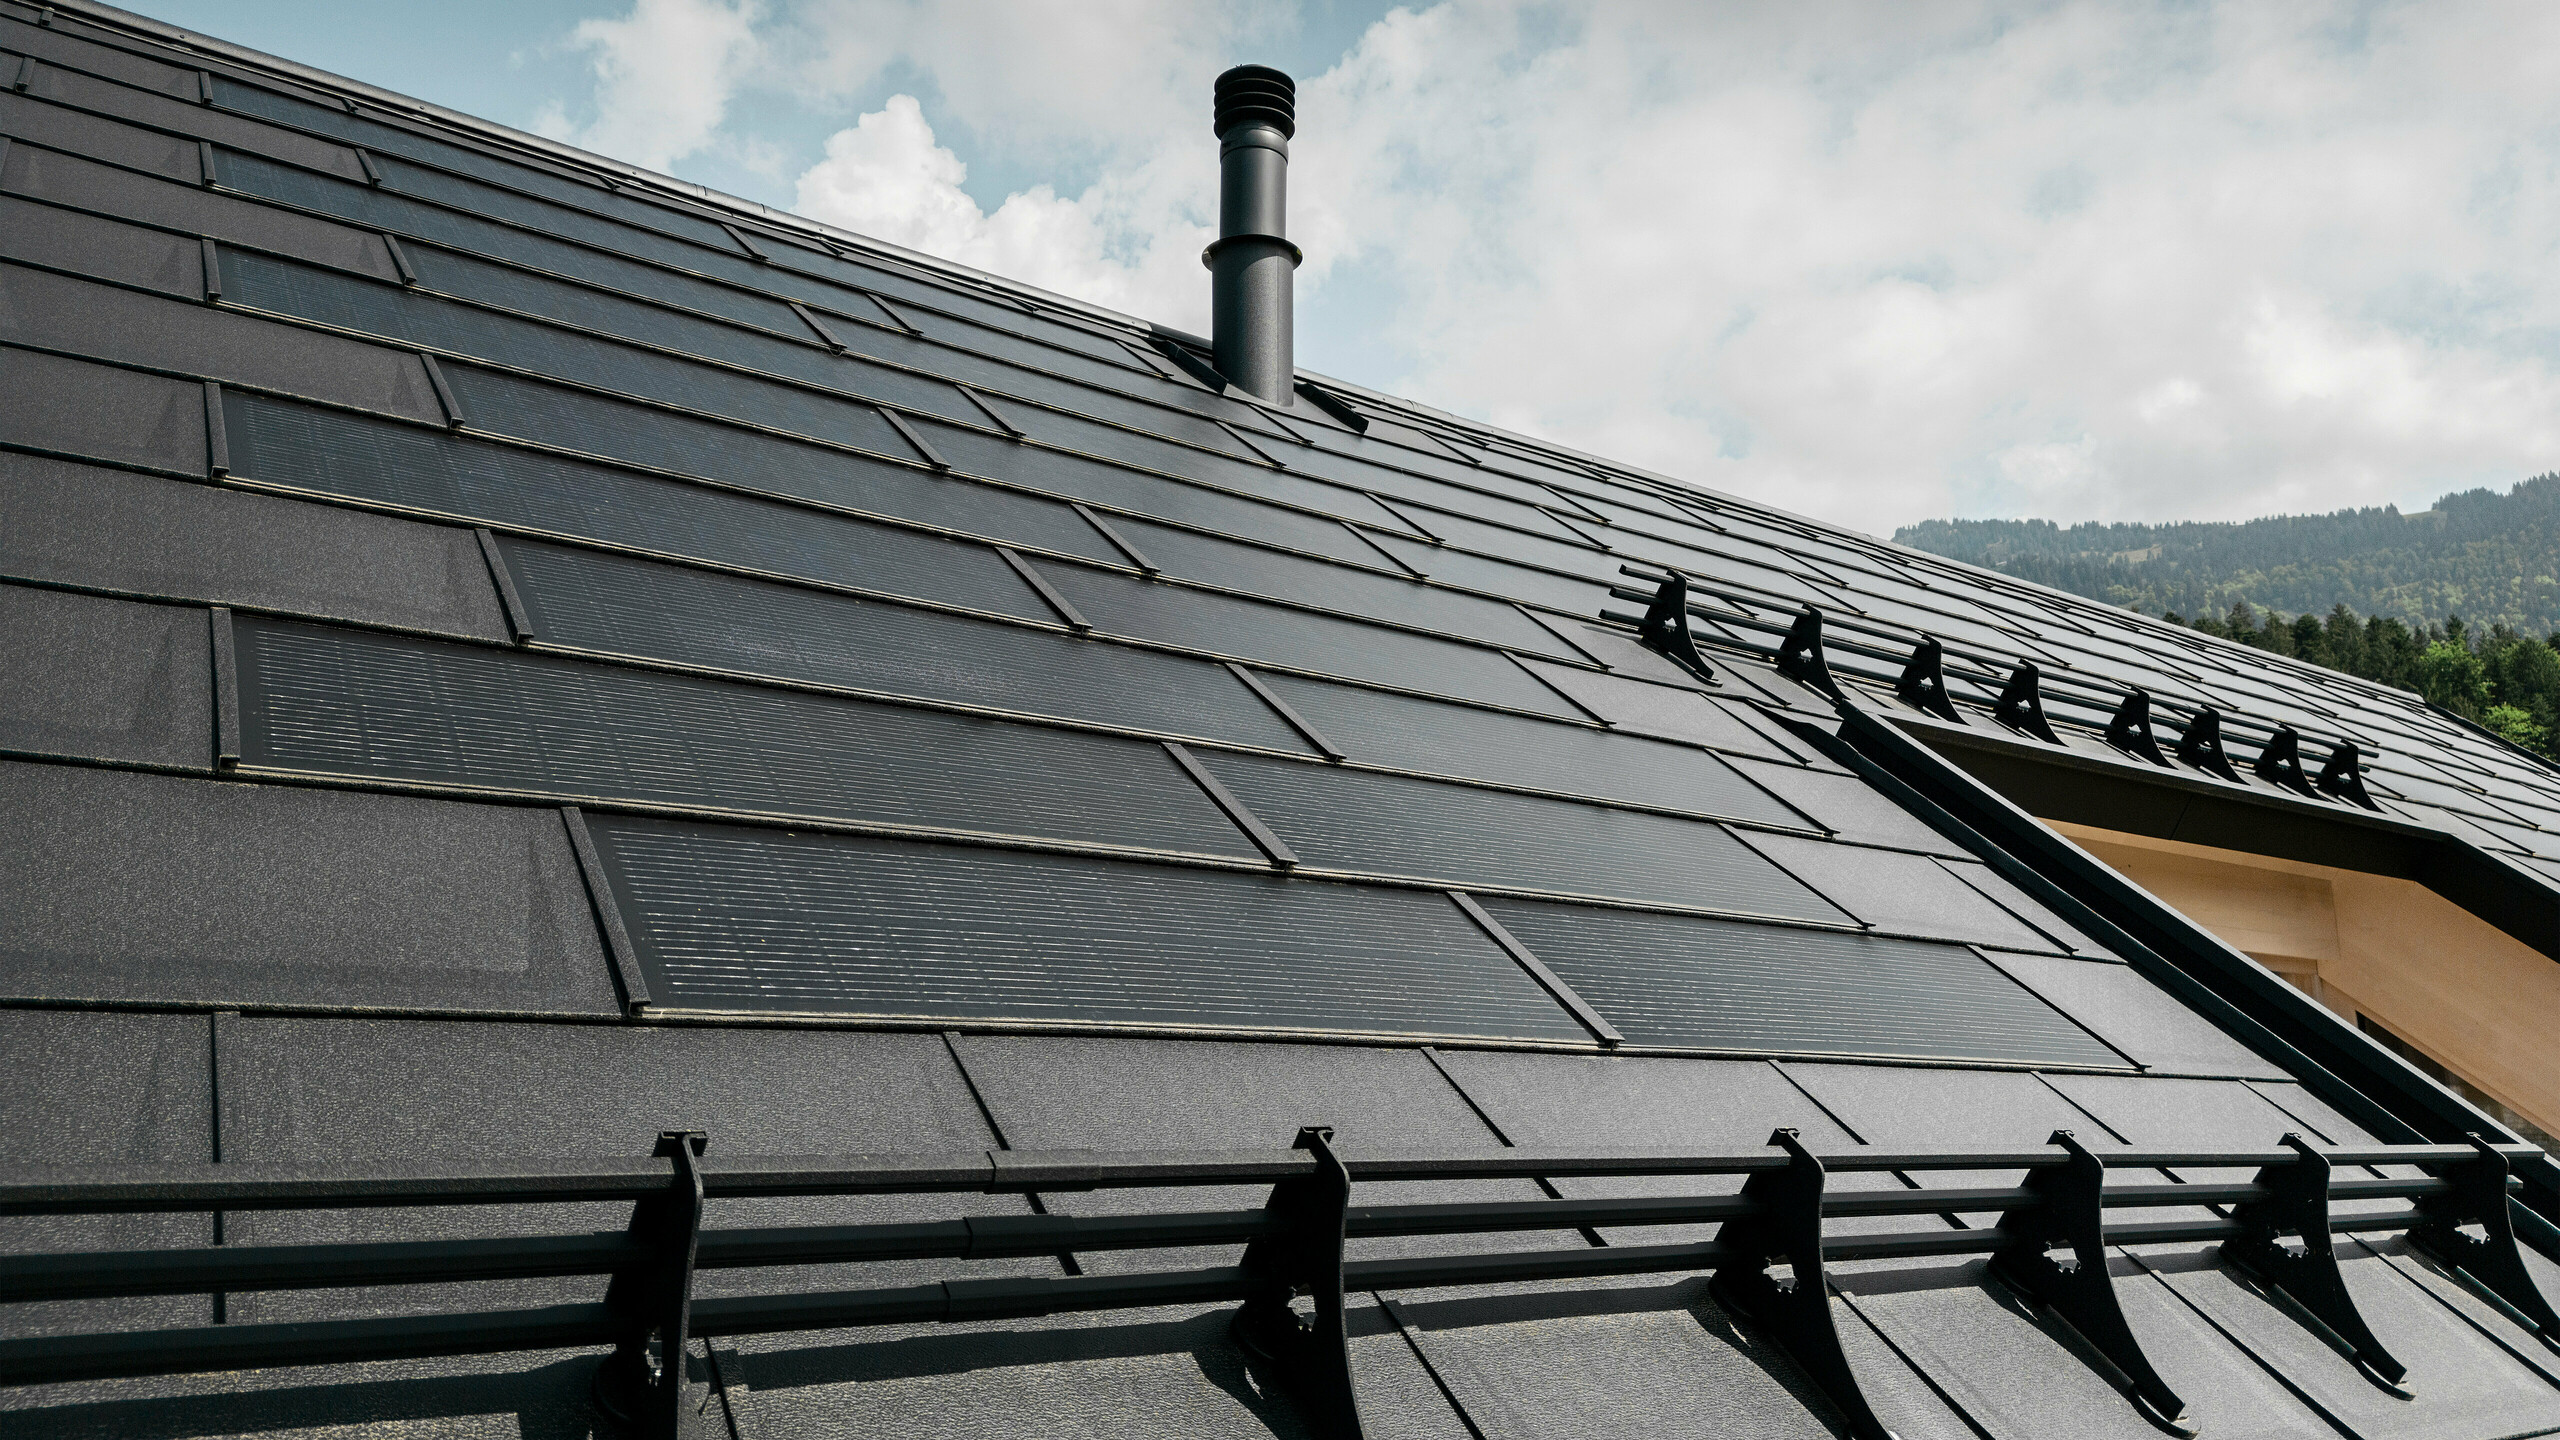 Gros plan sur la tuile solaire innovante PREFA, qui s'intègre parfaitement dans le toit noir composé de R.16 PREFA robustes. La combinaison d’une production d’énergie durable et d’une toiture en aluminium durable offre une solution de toiture écologique et esthétique qui s’intègre harmonieusement dans le paysage naturel. ​